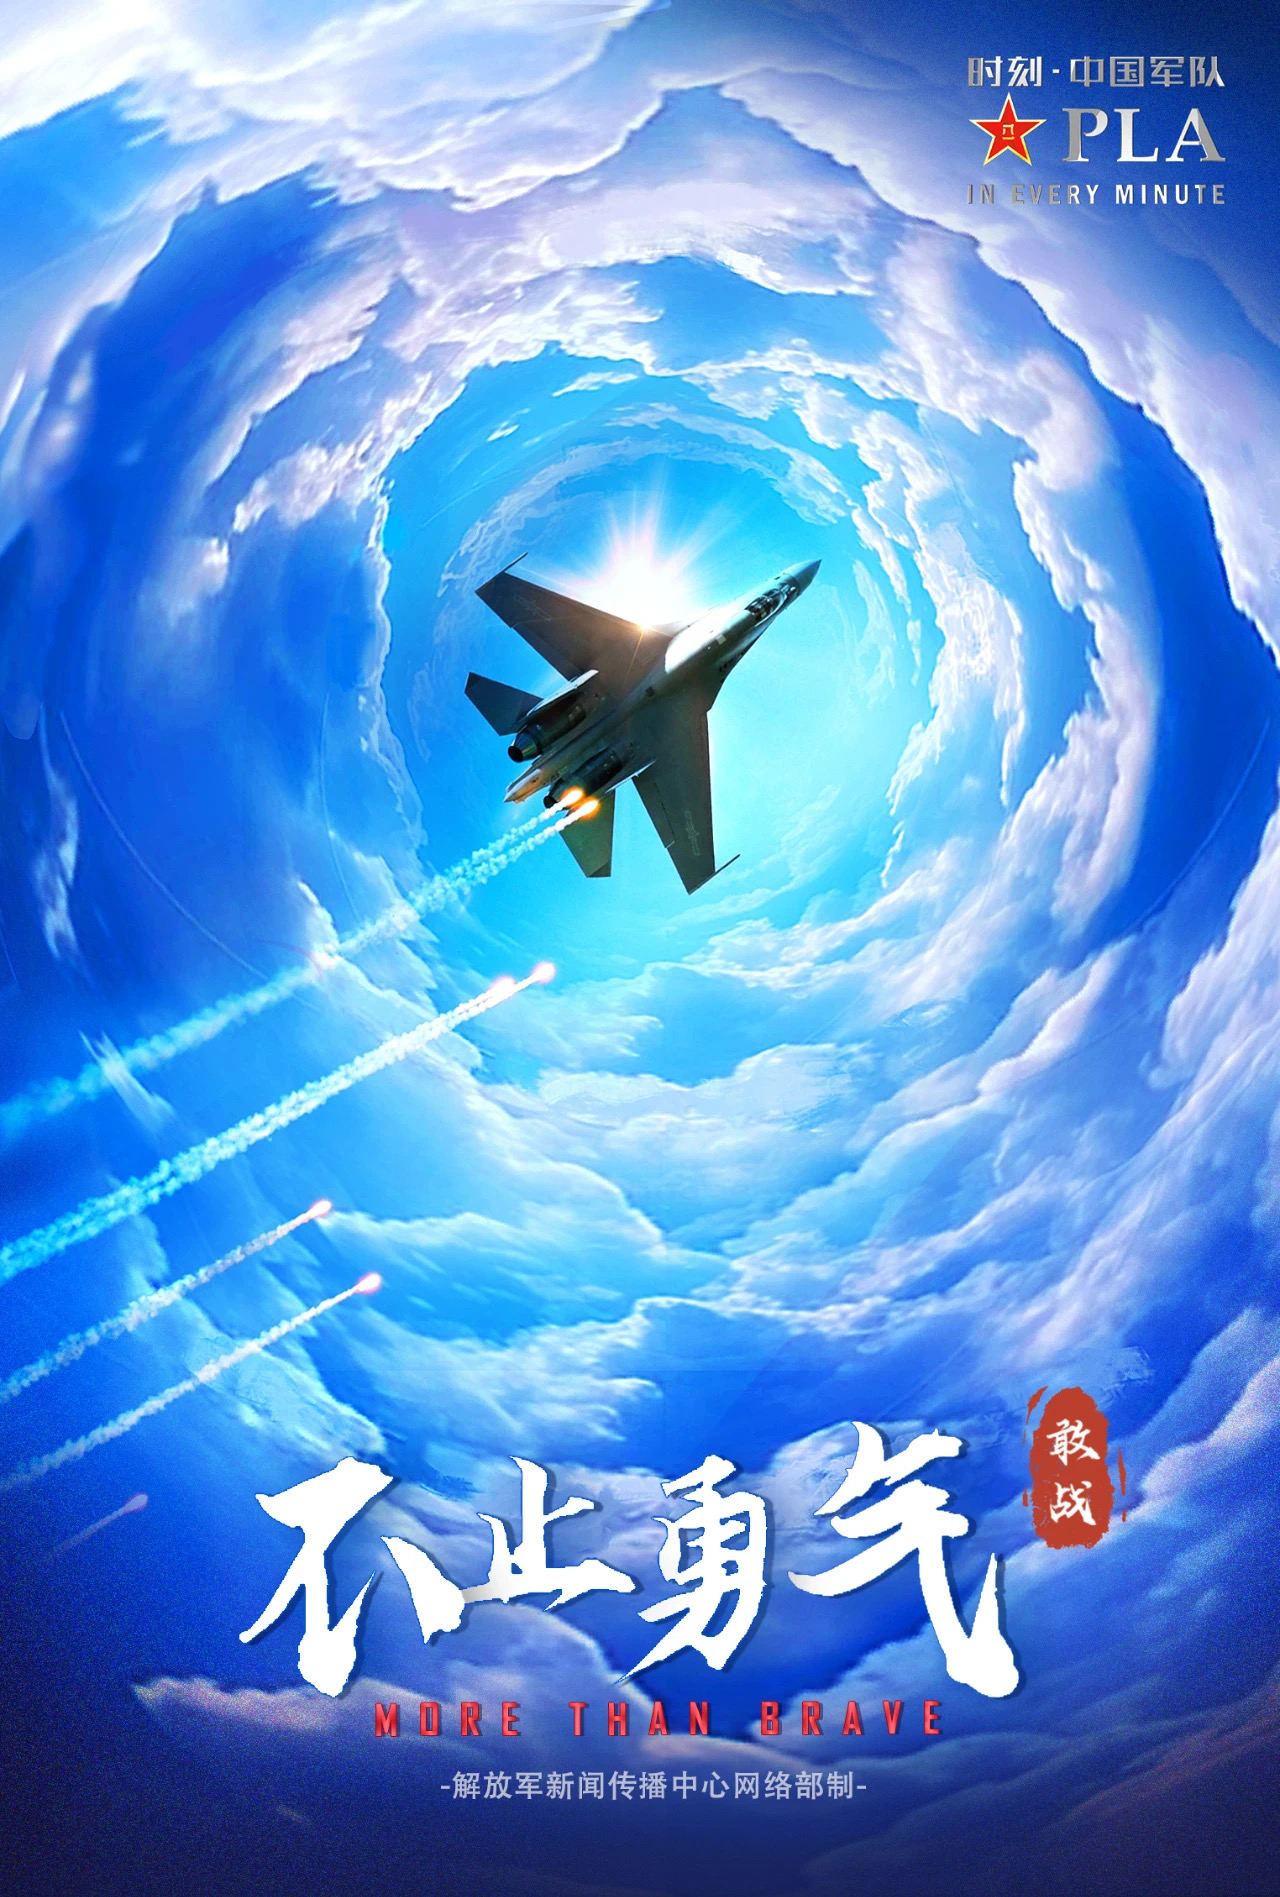 95不止勇气:中国空军蓝天展翅04  这是我第一次近距离感受中国